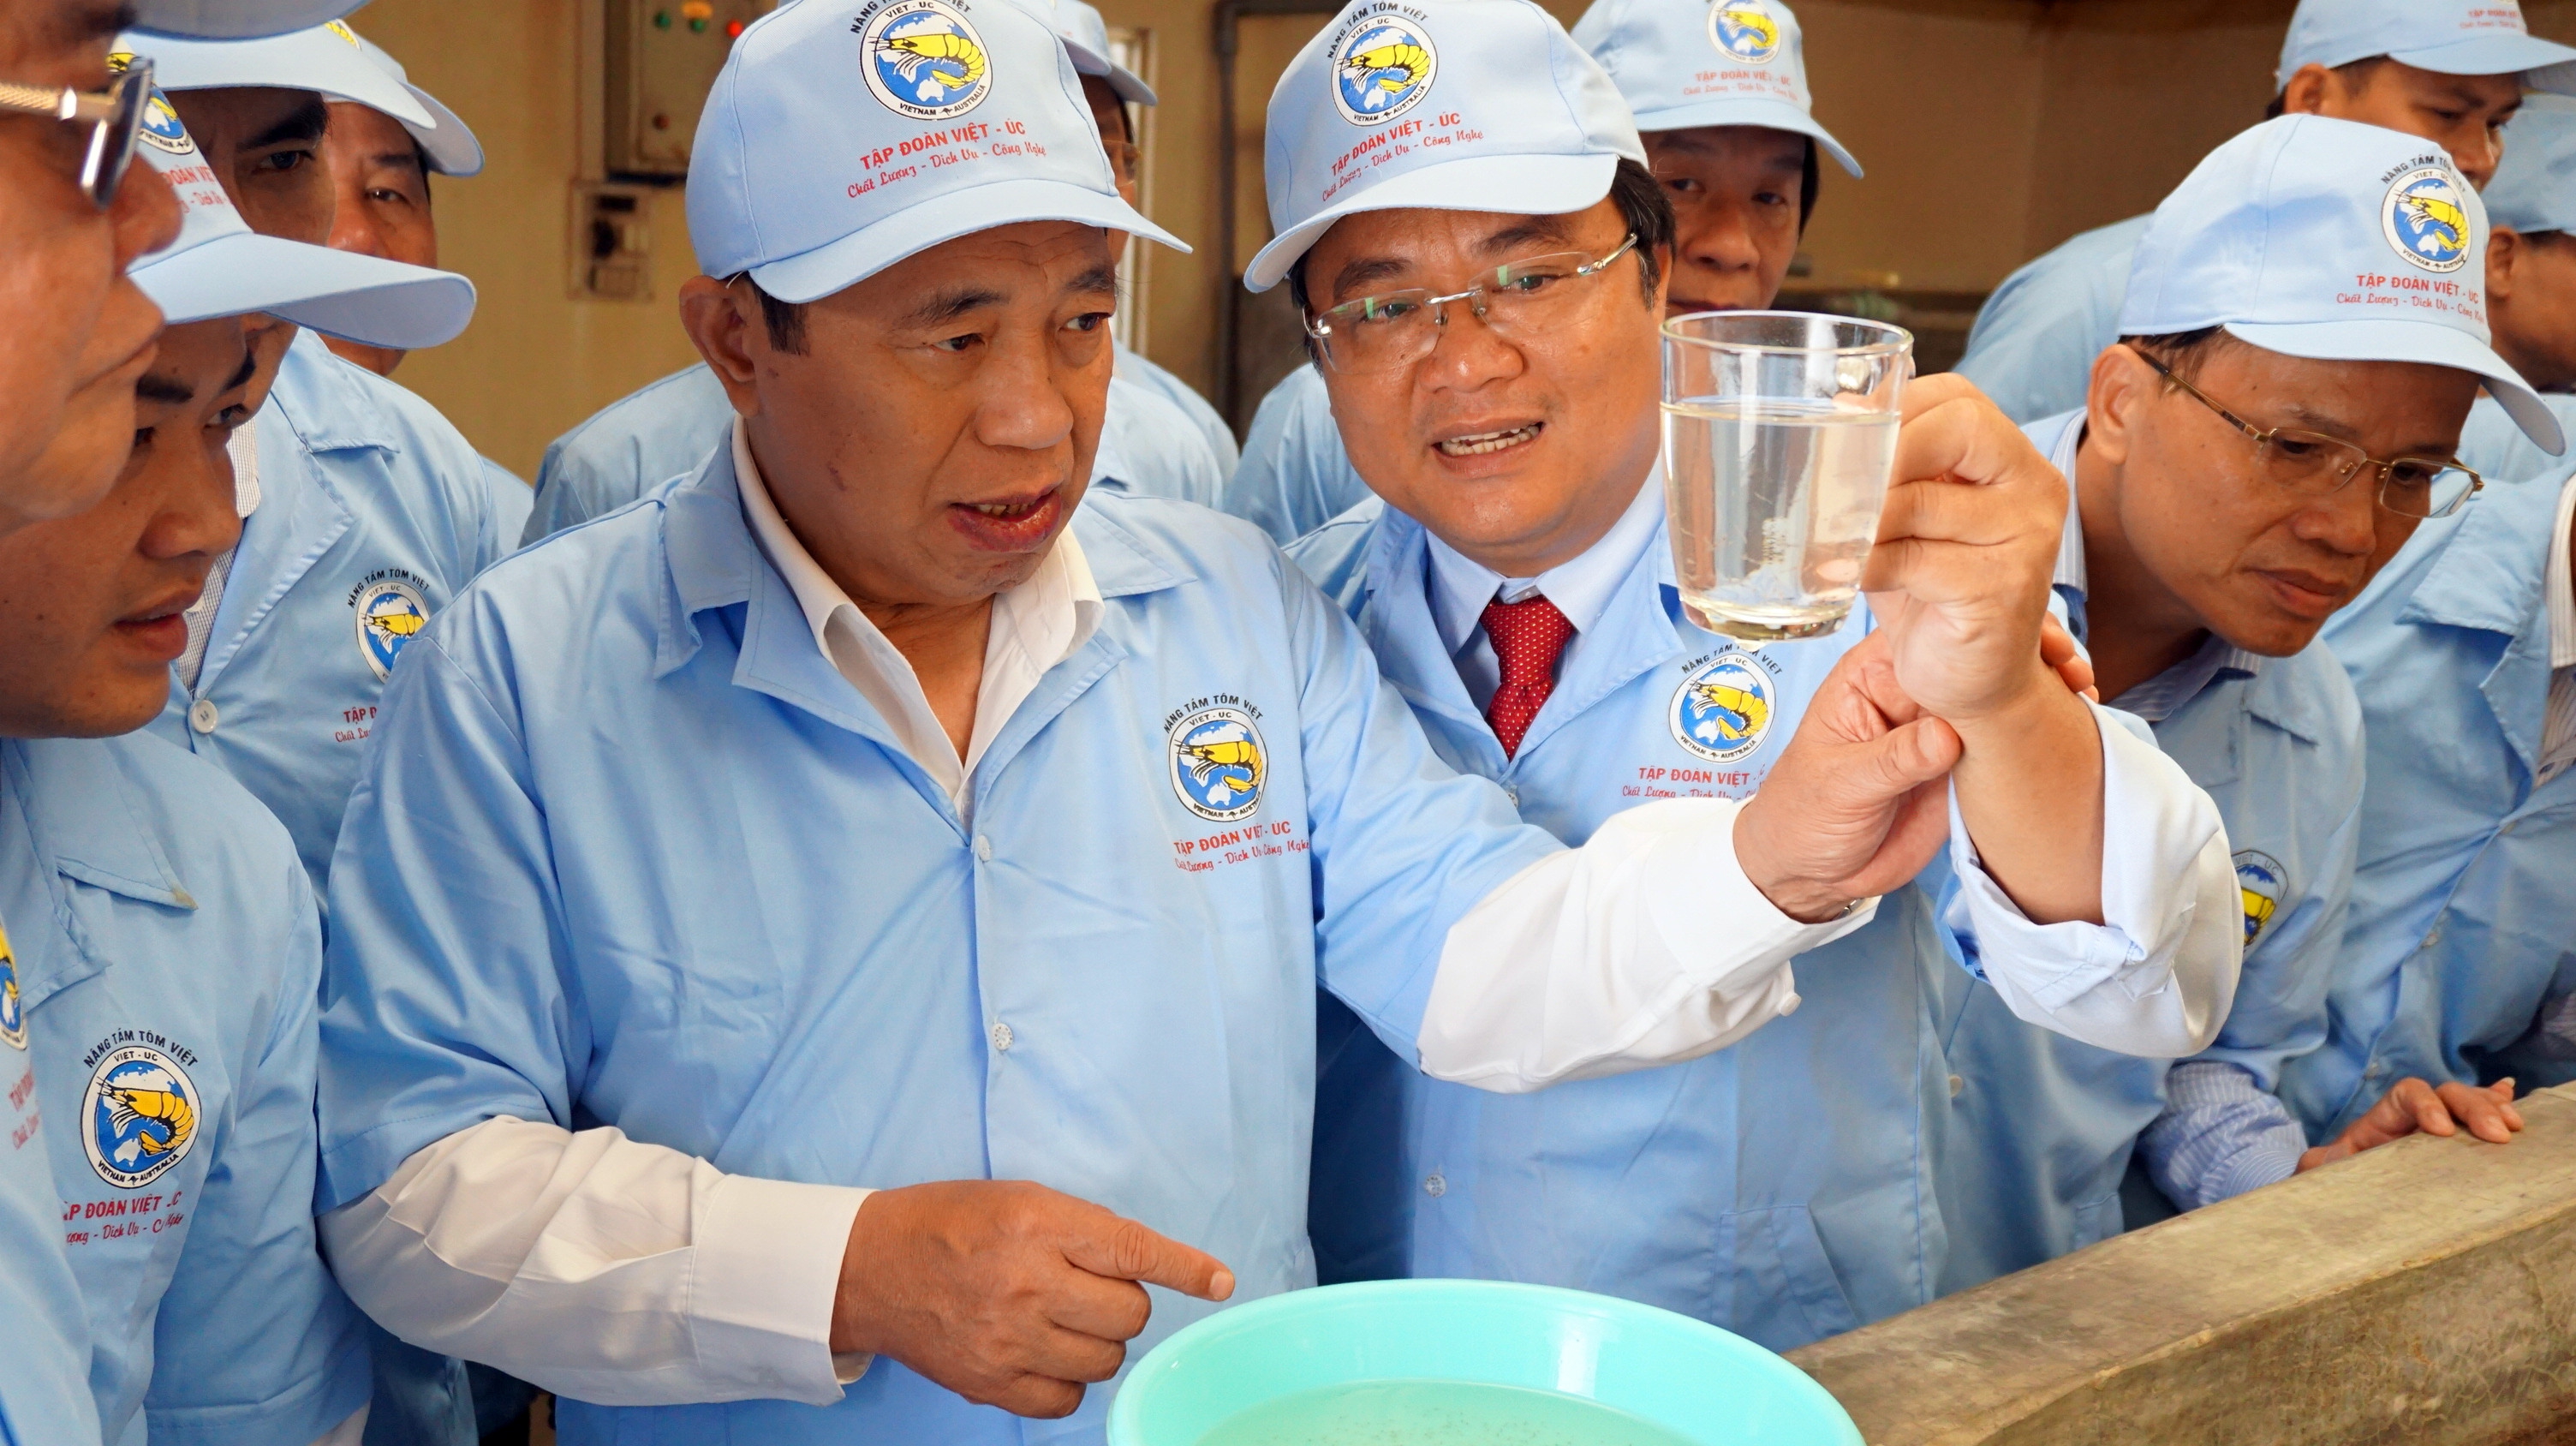 Đoàn cũng đến thăm những mô hình áp dụng công nghệ cao vào sản xuất, chế biến như Công ty sản xuất tôm giống Việt Úc tại Quỳnh Nghĩa, là công ty sản xuất tôm giống lớn nhất khu vực bắc miền Trung với công suất 2 tỷ con giống trên/năm.